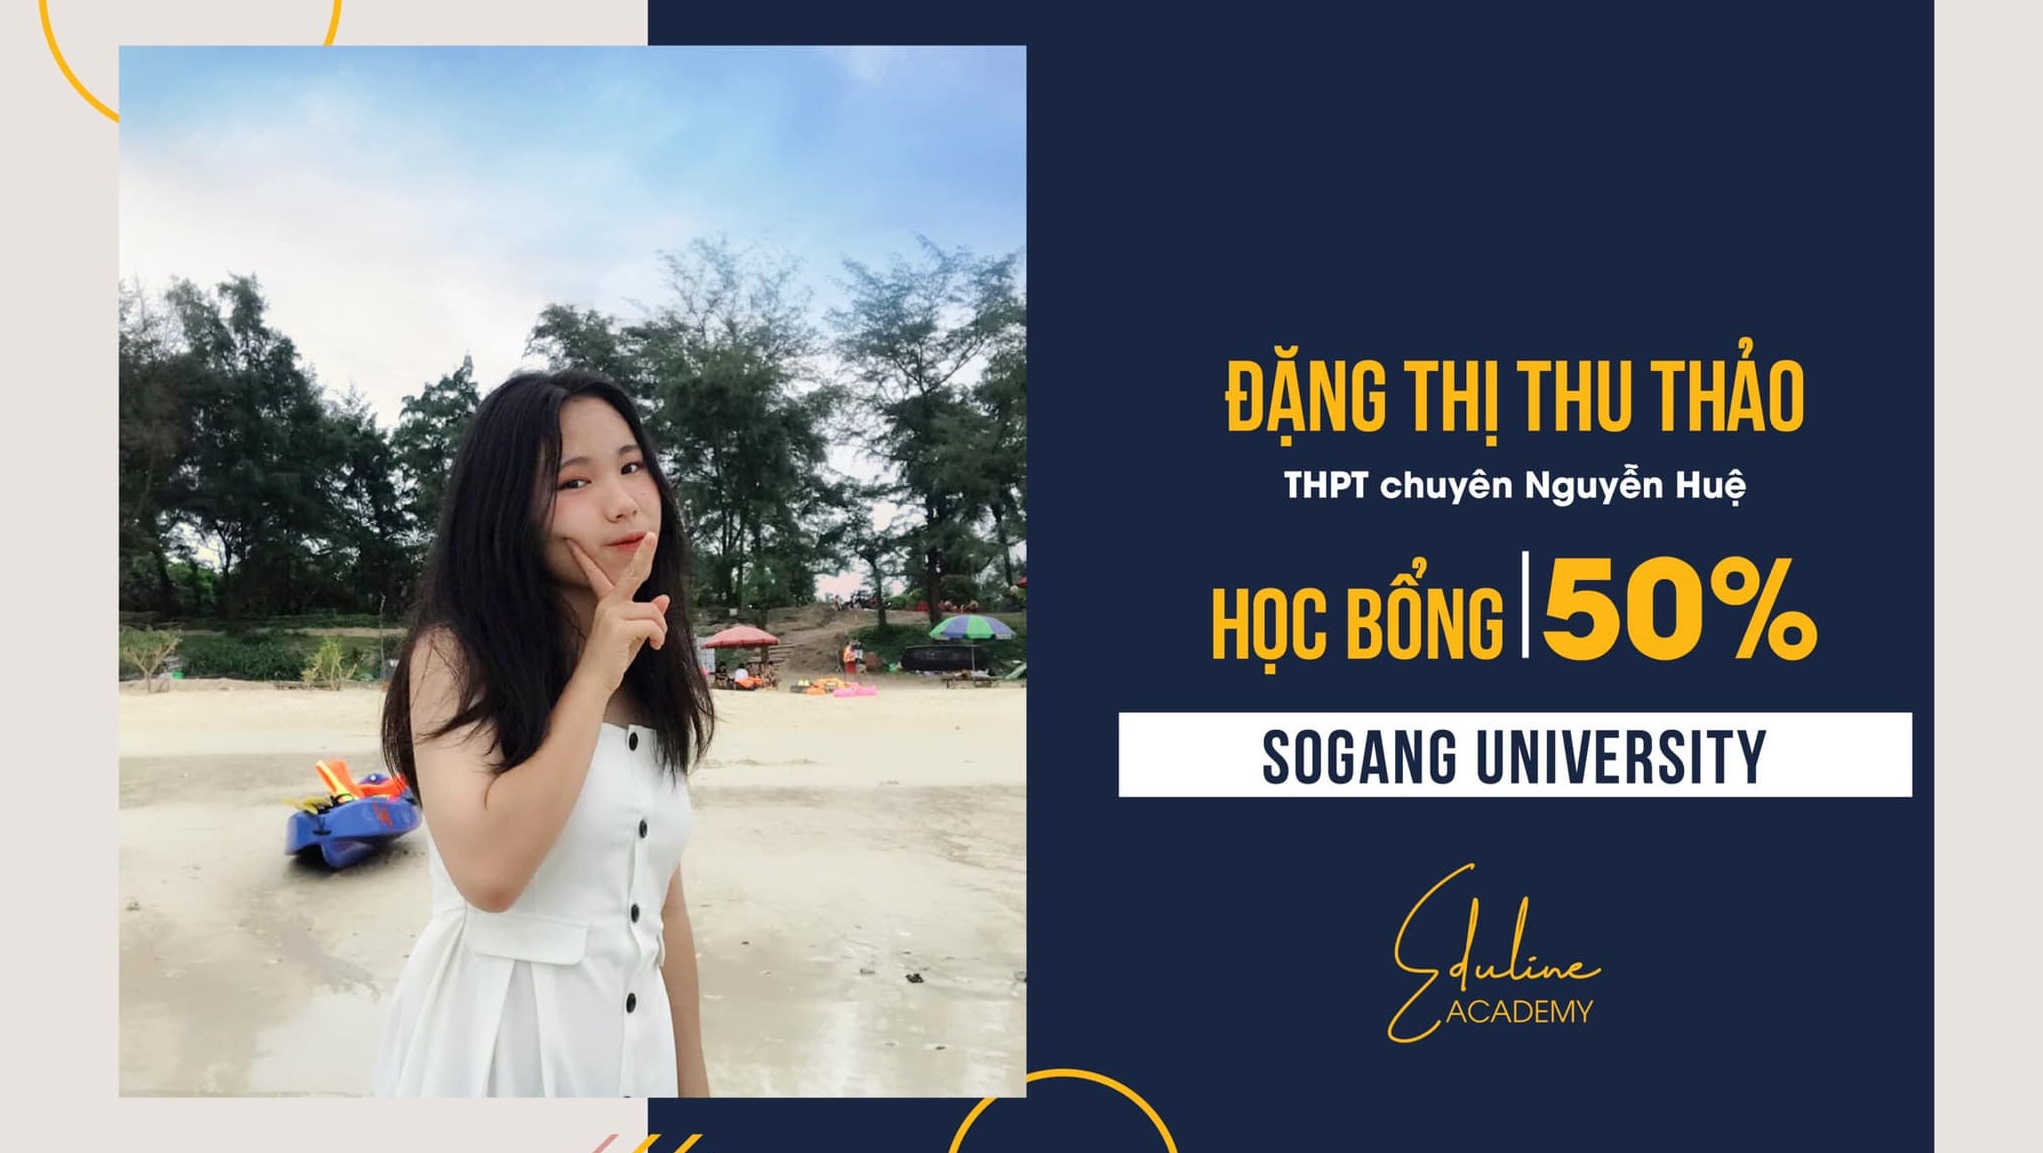 Chúc mừng Thu Thảo với suất học bổng 50% từ Sogang University